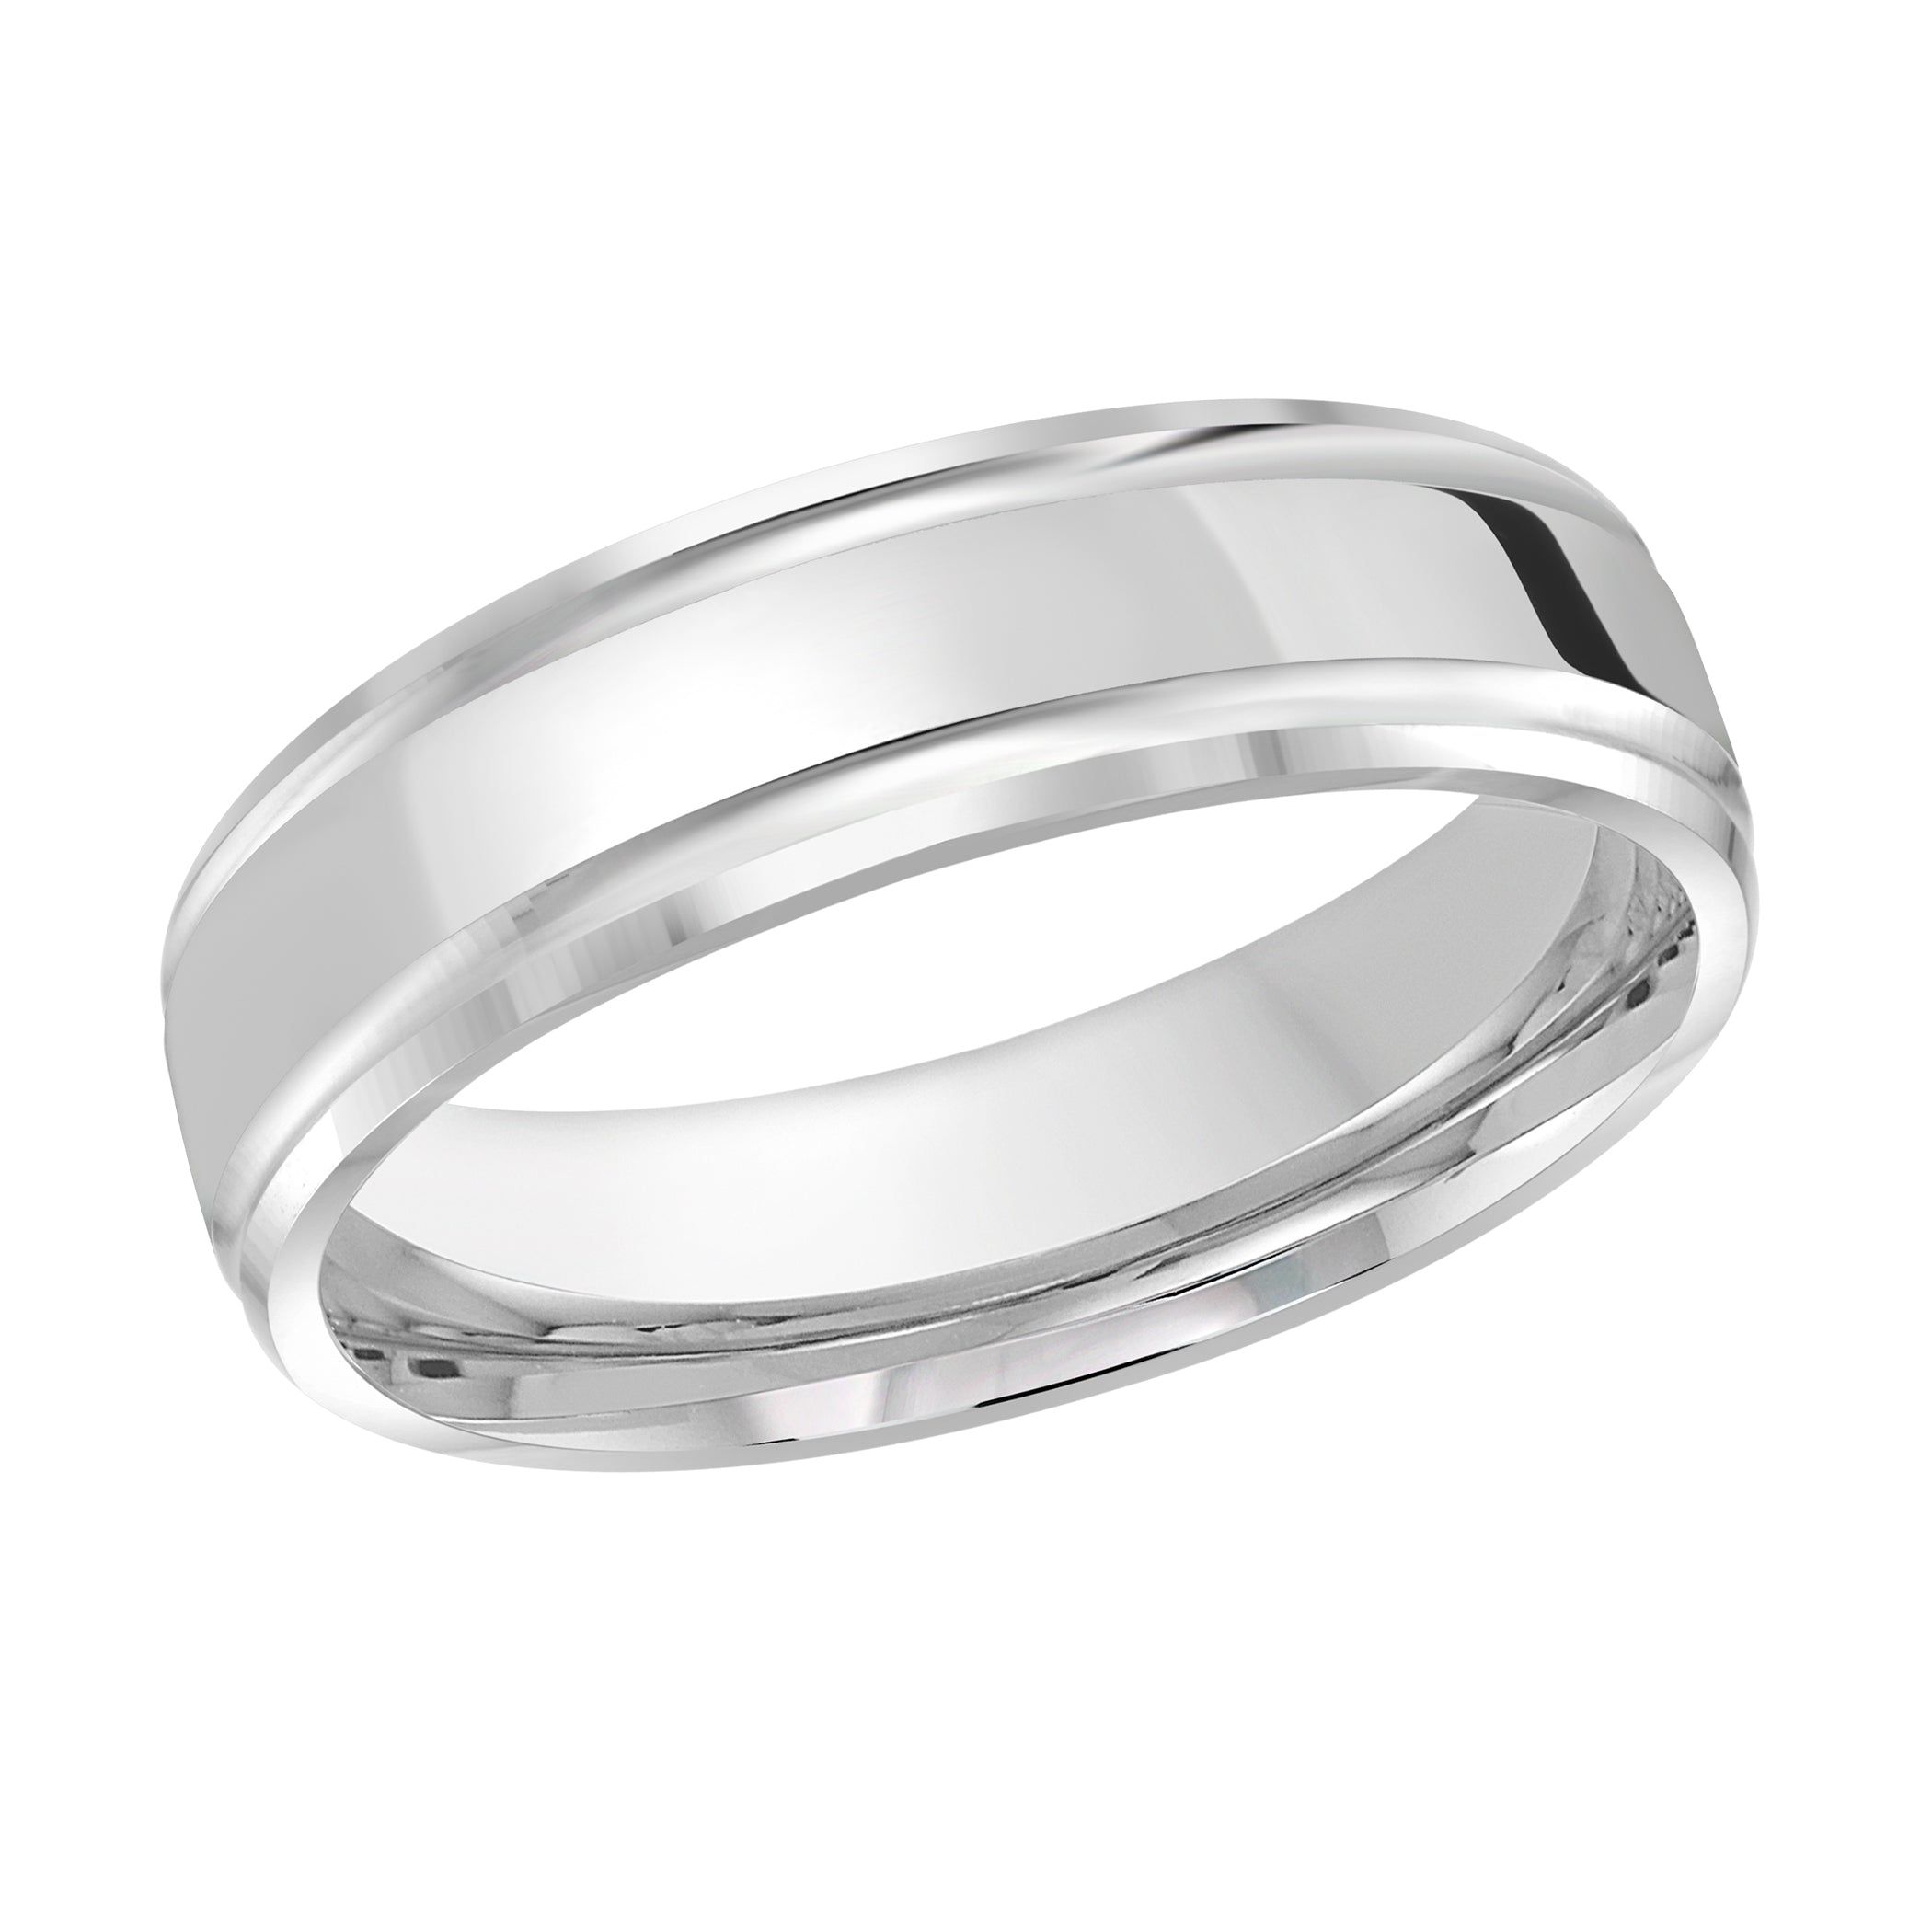 Men's 6mm Beveled Edge Wedding Ring